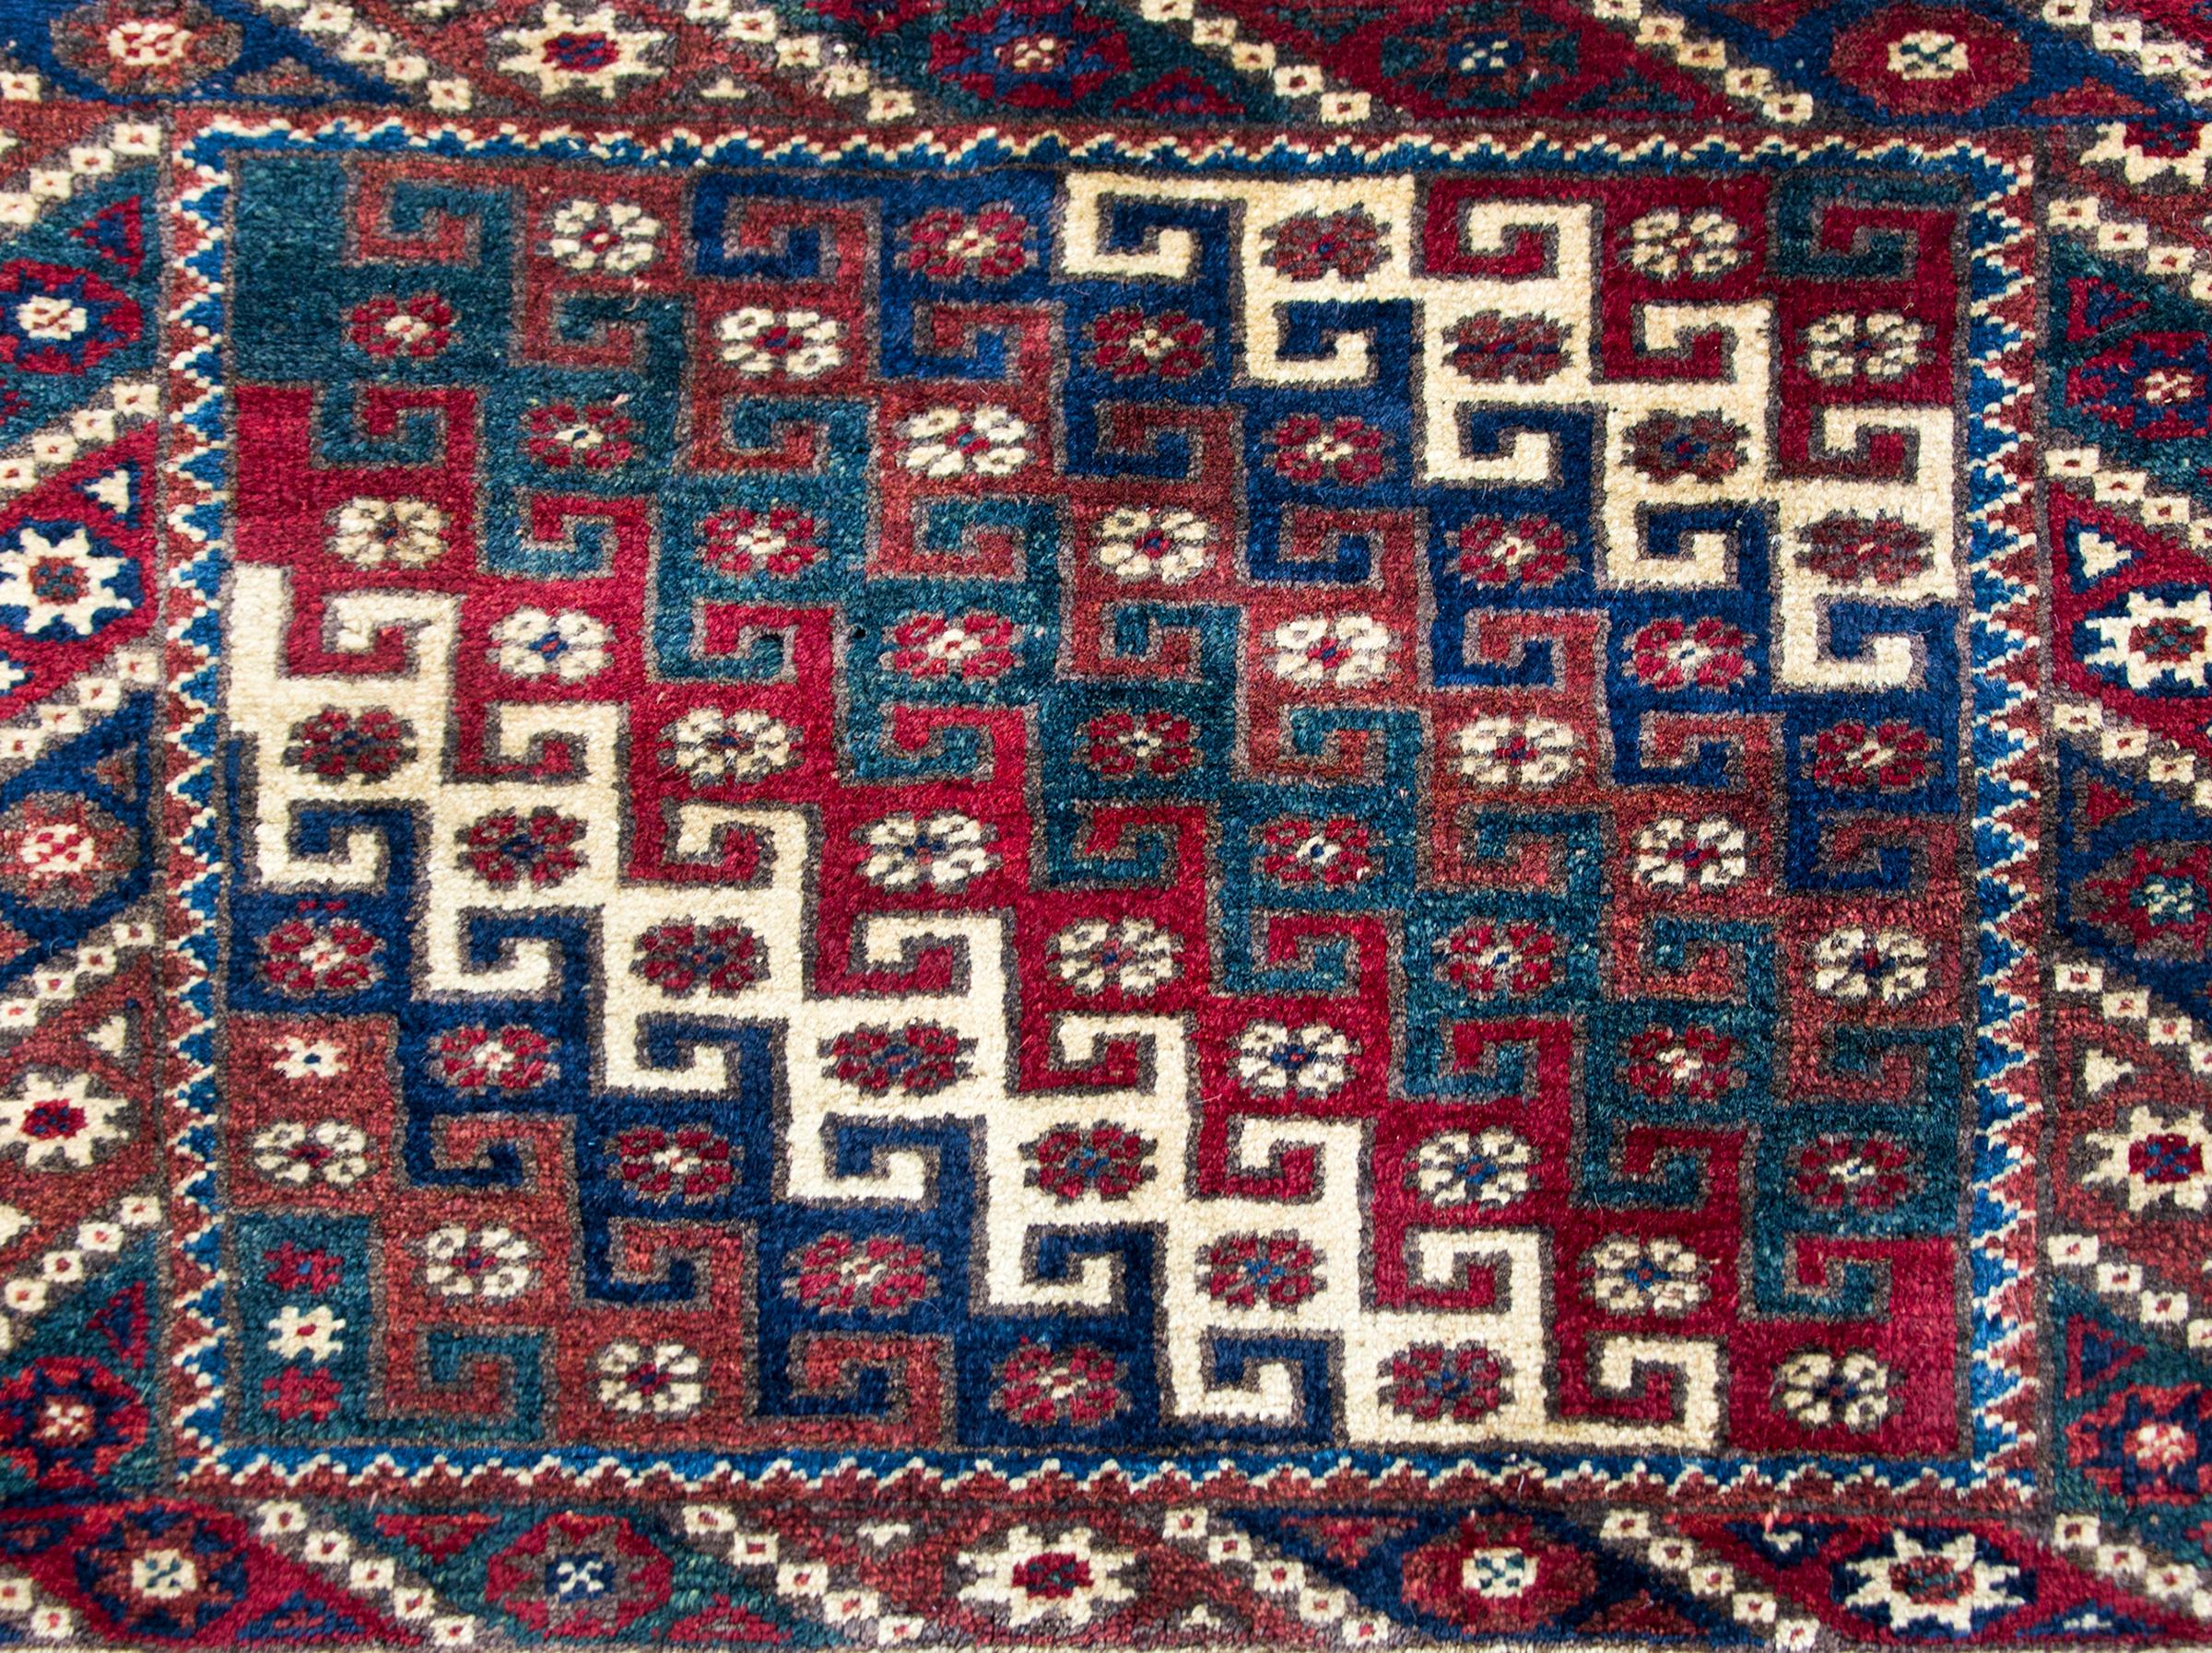 Magnifique tapis turc vintage de Konya à motif diagonal avec des rayures géométriques imbriquées et des petites fleurs, entouré d'une bordure avec d'autres petites fleurs et des rayures géométriques, le tout tissé dans des tons de joyaux tels que le